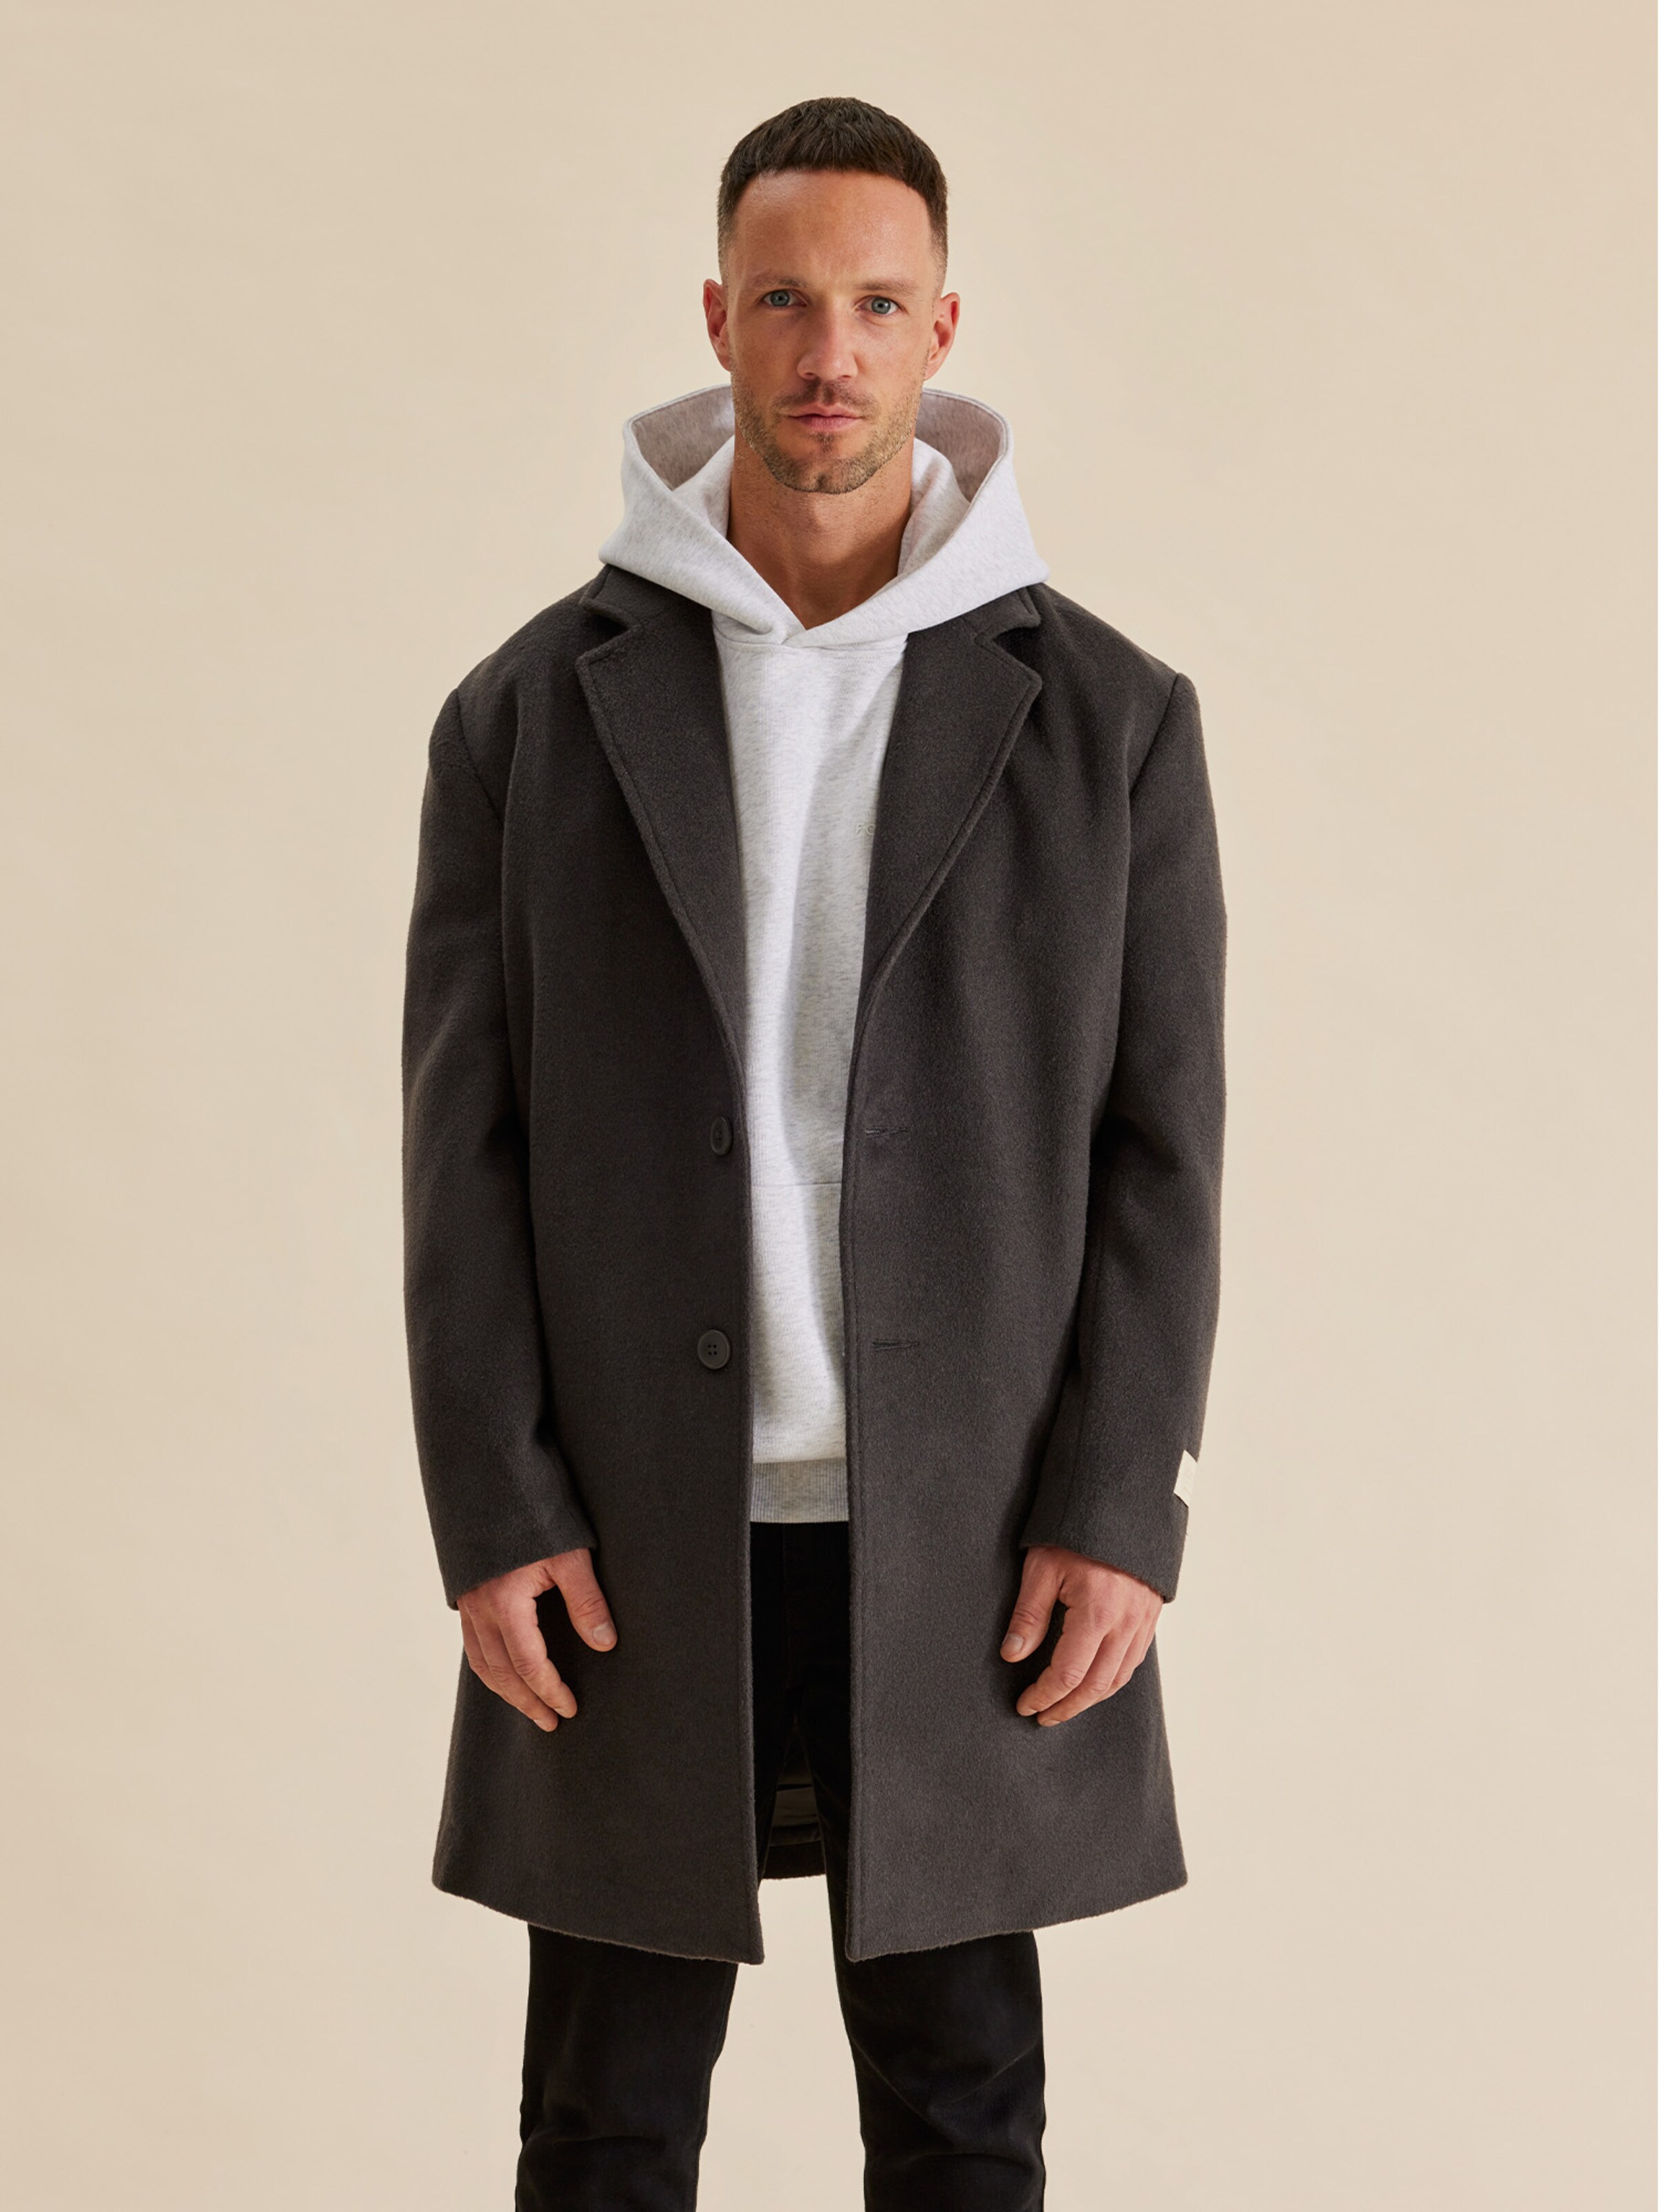 discount 77% Up2 Fashion Long coat MEN FASHION Coats Casual Navy Blue 46                  EU 